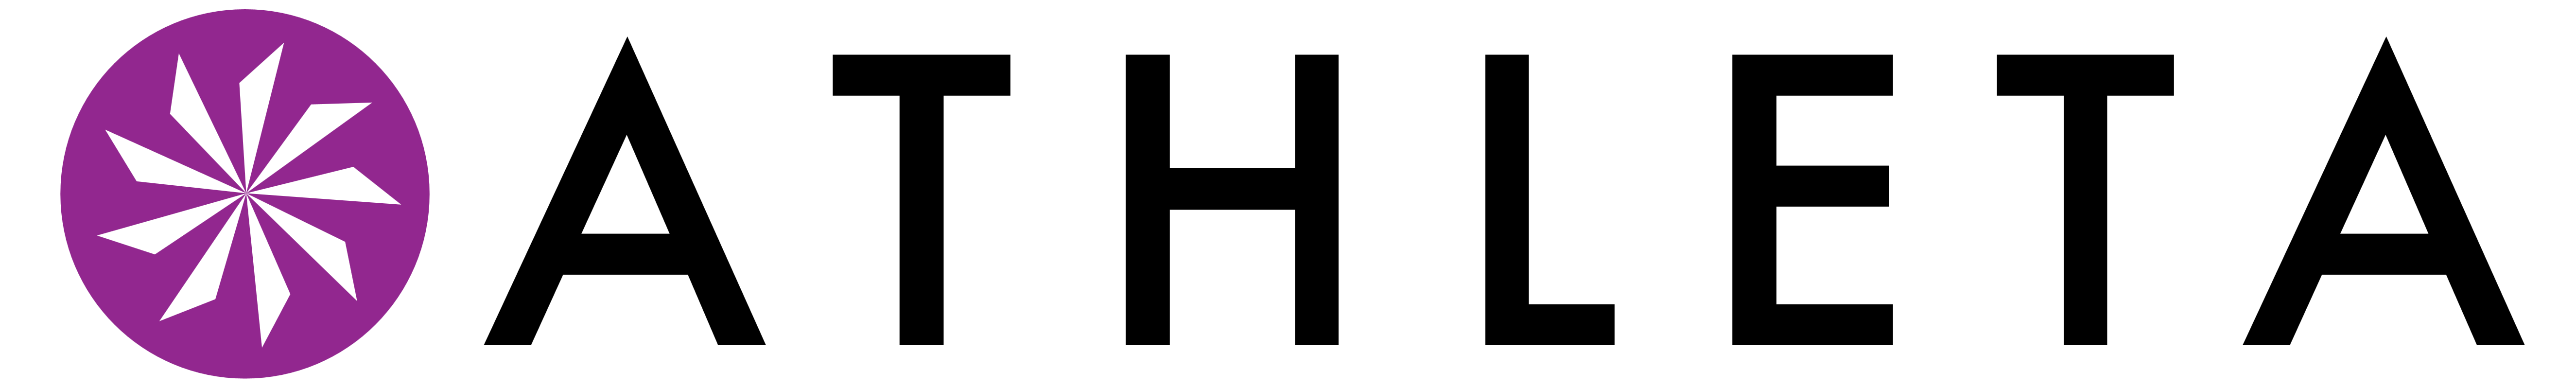 Athleta logo, logotype